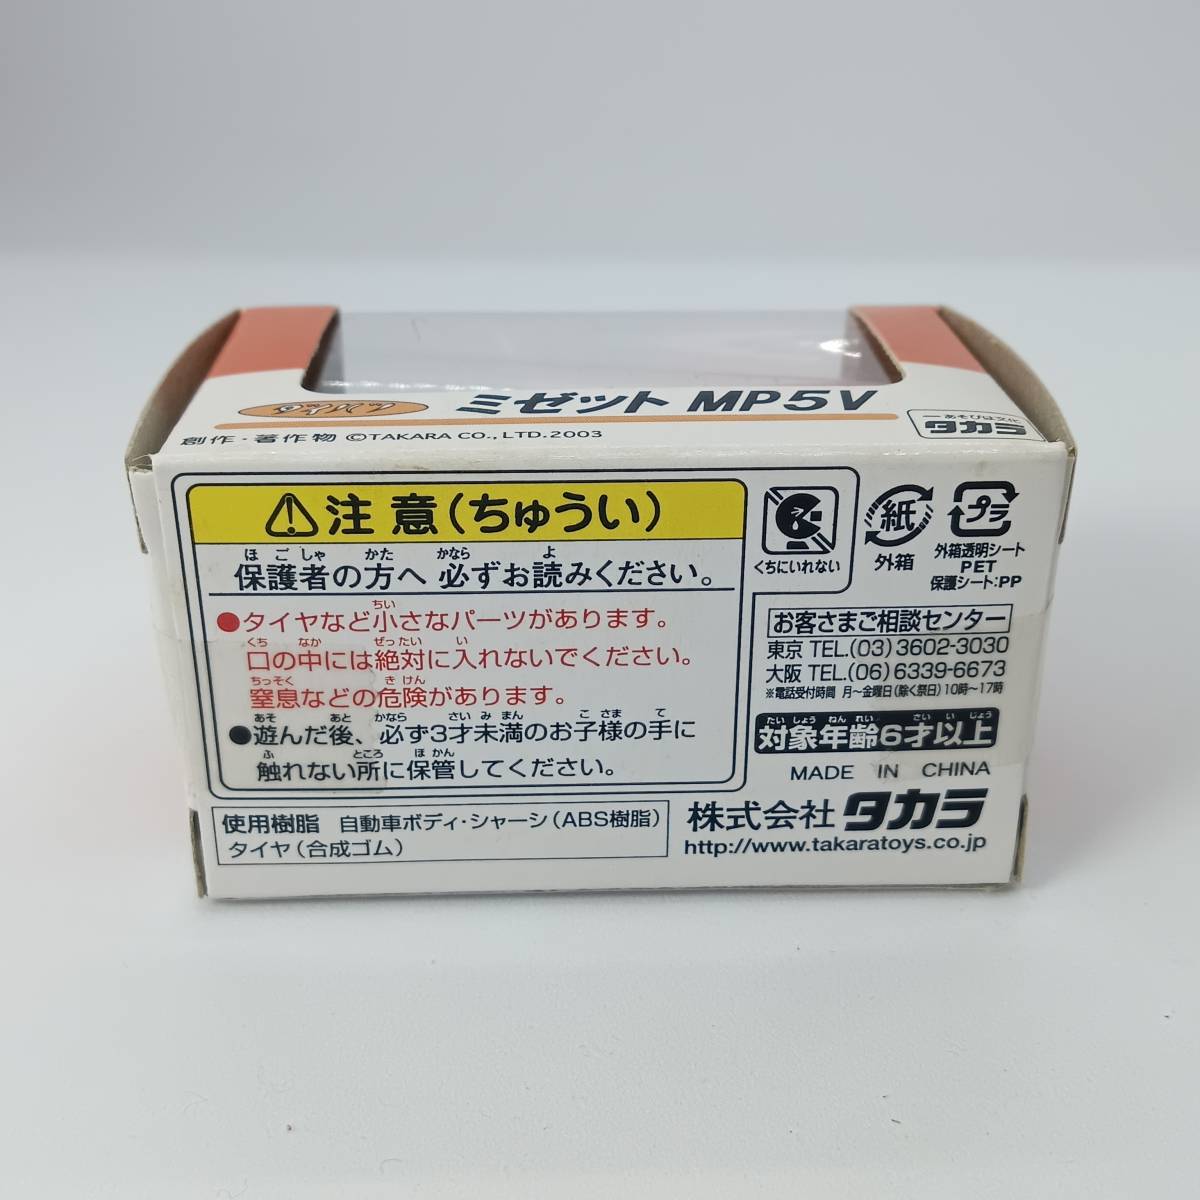 [ нераспечатанный ] Choro Q Daihatsu Midget MP5V ностальгия. mail автомобиль (Q03357